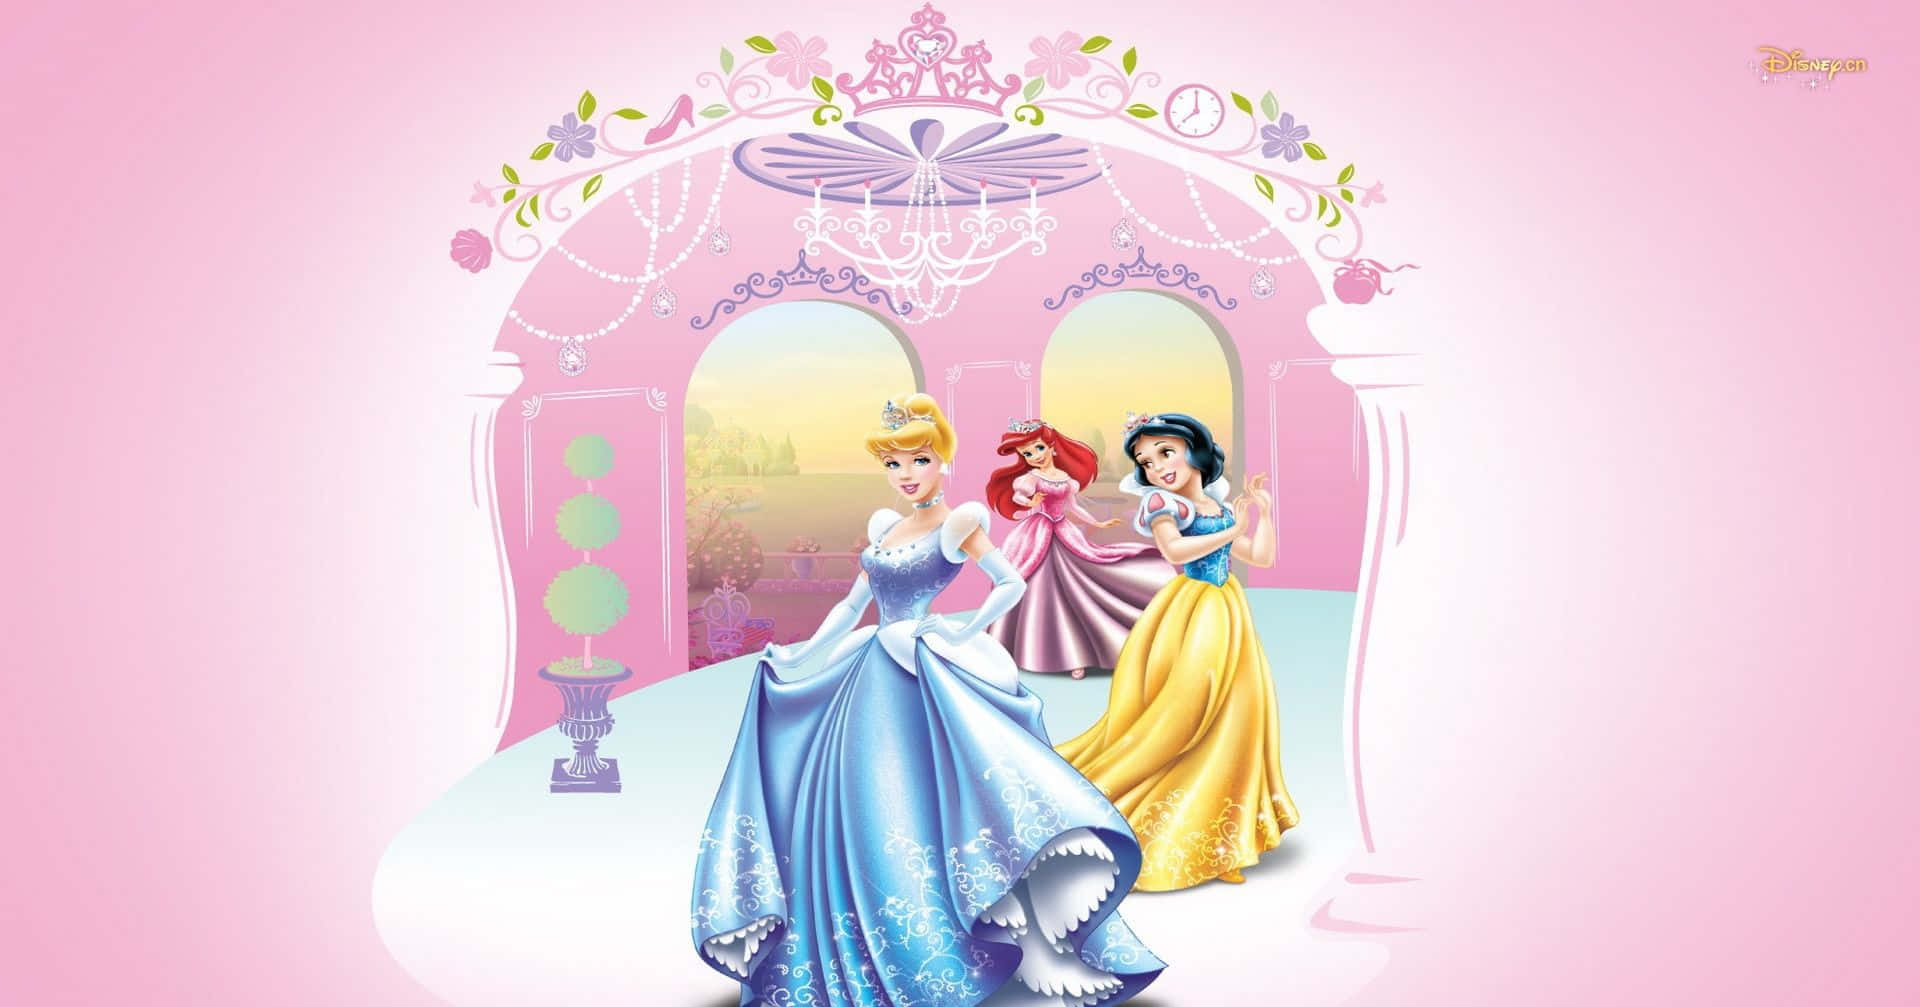 Disneyprinsessor – Cinderella, Ariel, Snow White Bild.